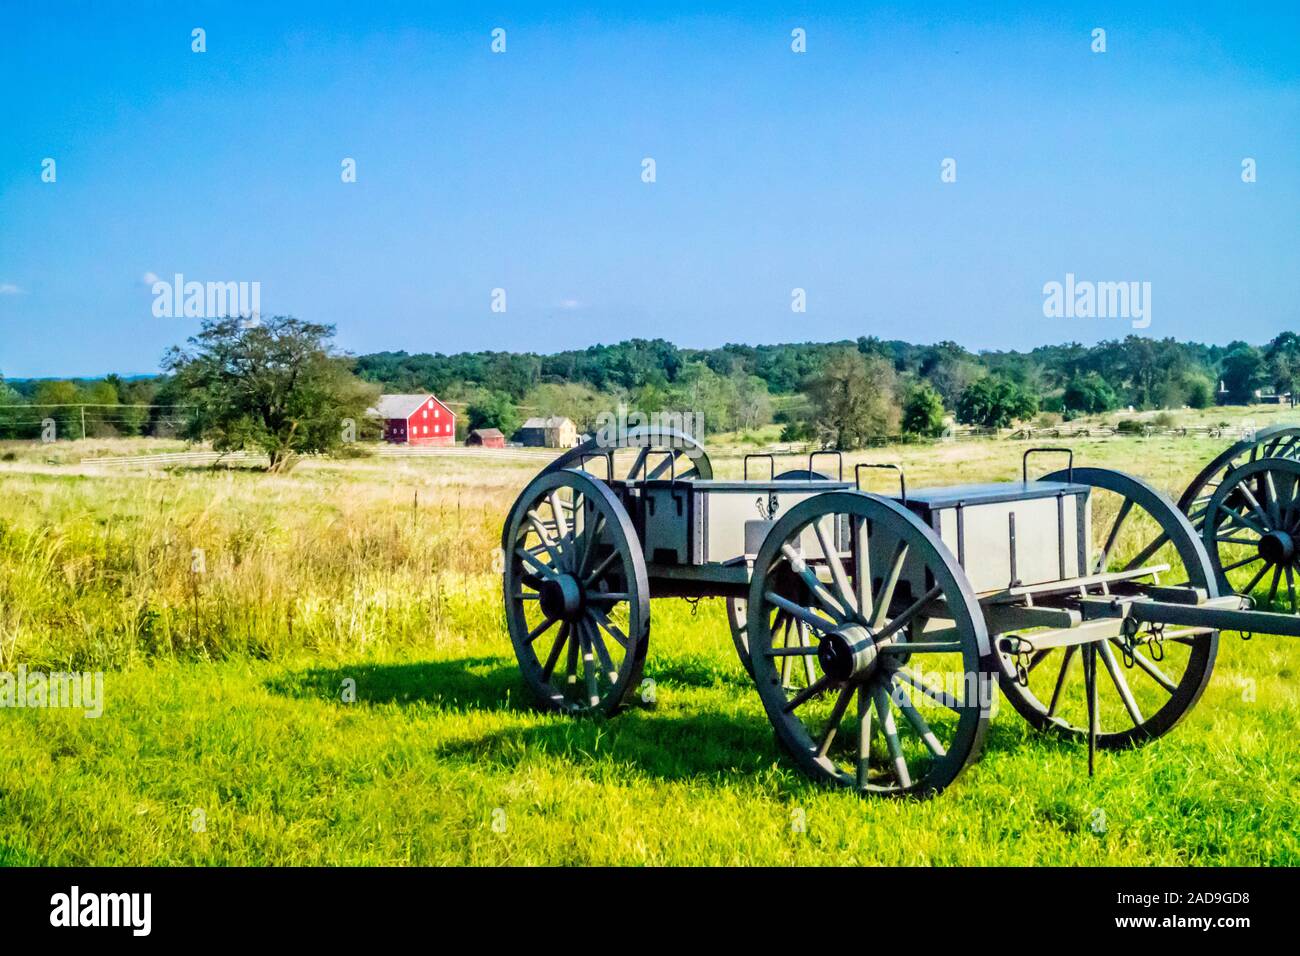 Eine alte Kanone Artillerie des 19. Jahrhunderts in Gettysburg, Pennsylvania Stockfoto